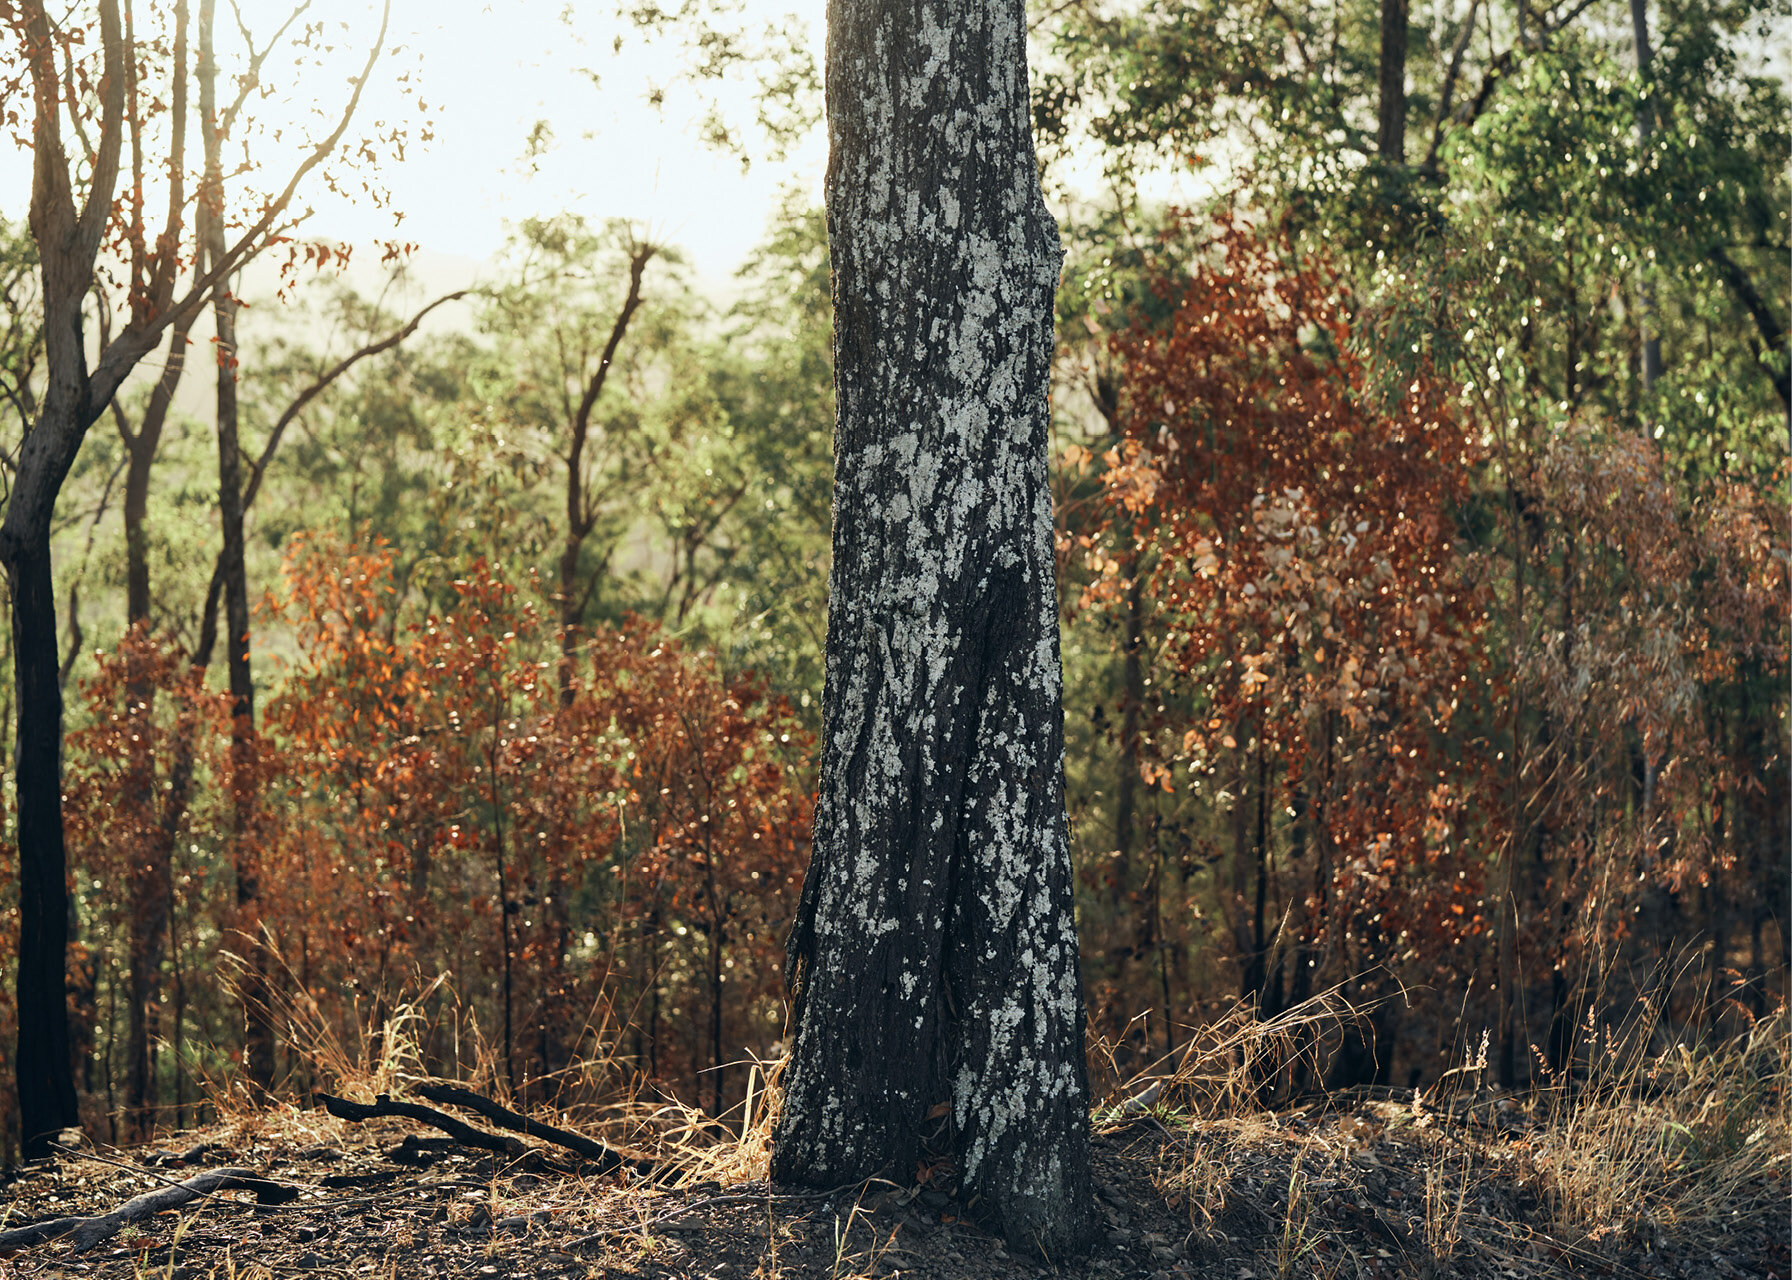  BRISBANE FOREST AFTER RECENT BACKBURNING 